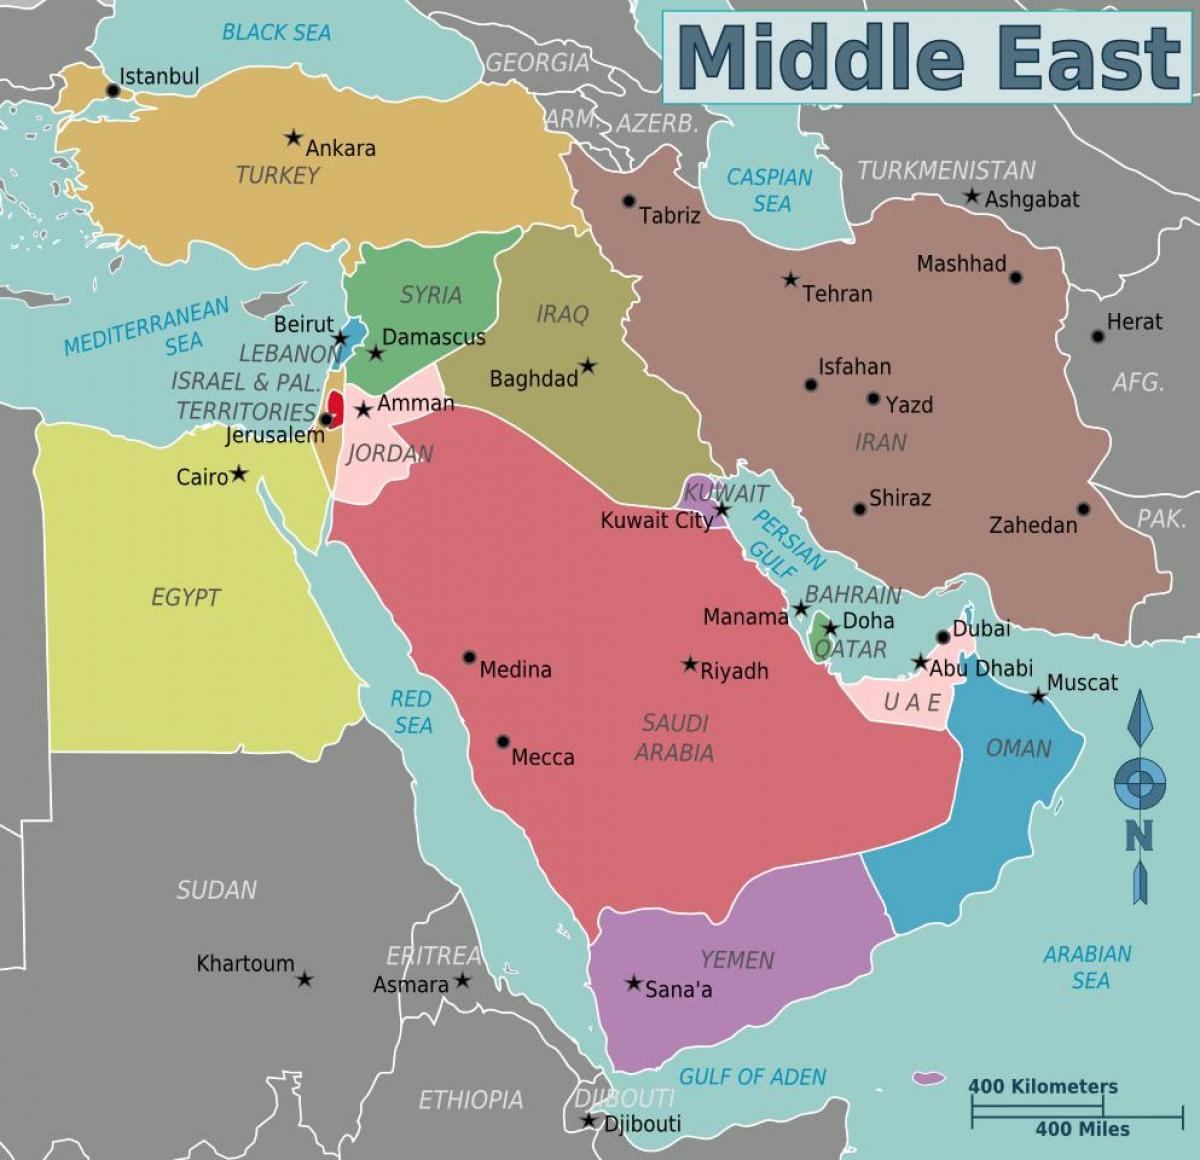 Bản đồ Trung Đông Oman năm 2024 thể hiện tuyệt đẹp về những thành phố hiện đại tại Oman và các quốc gia lân cận. Từ khu phố cổ của Muscat đến những thành phố đang phát triển, hãy cùng khám phá Oman trên bản đồ Trung Đông đầy màu sắc.